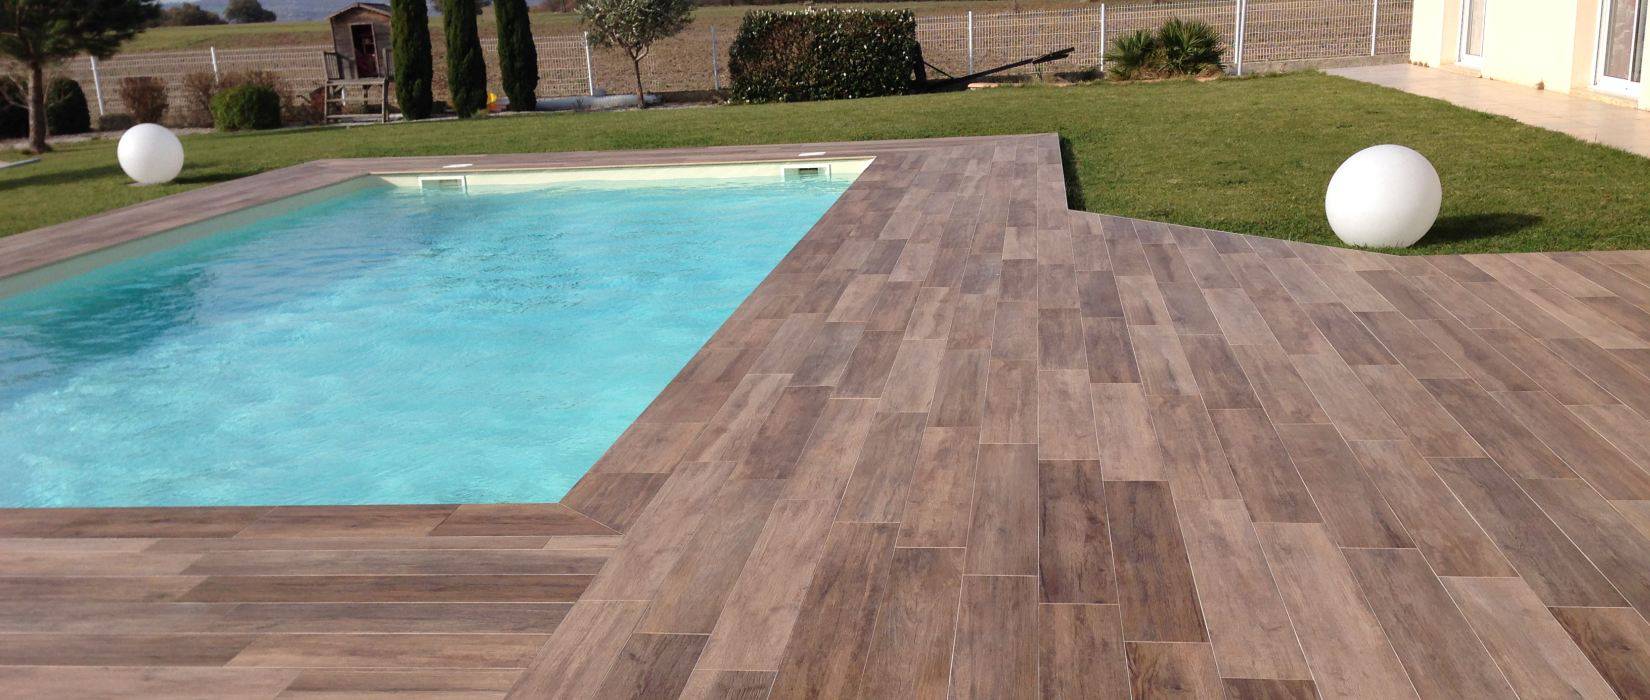 Wood effect pool